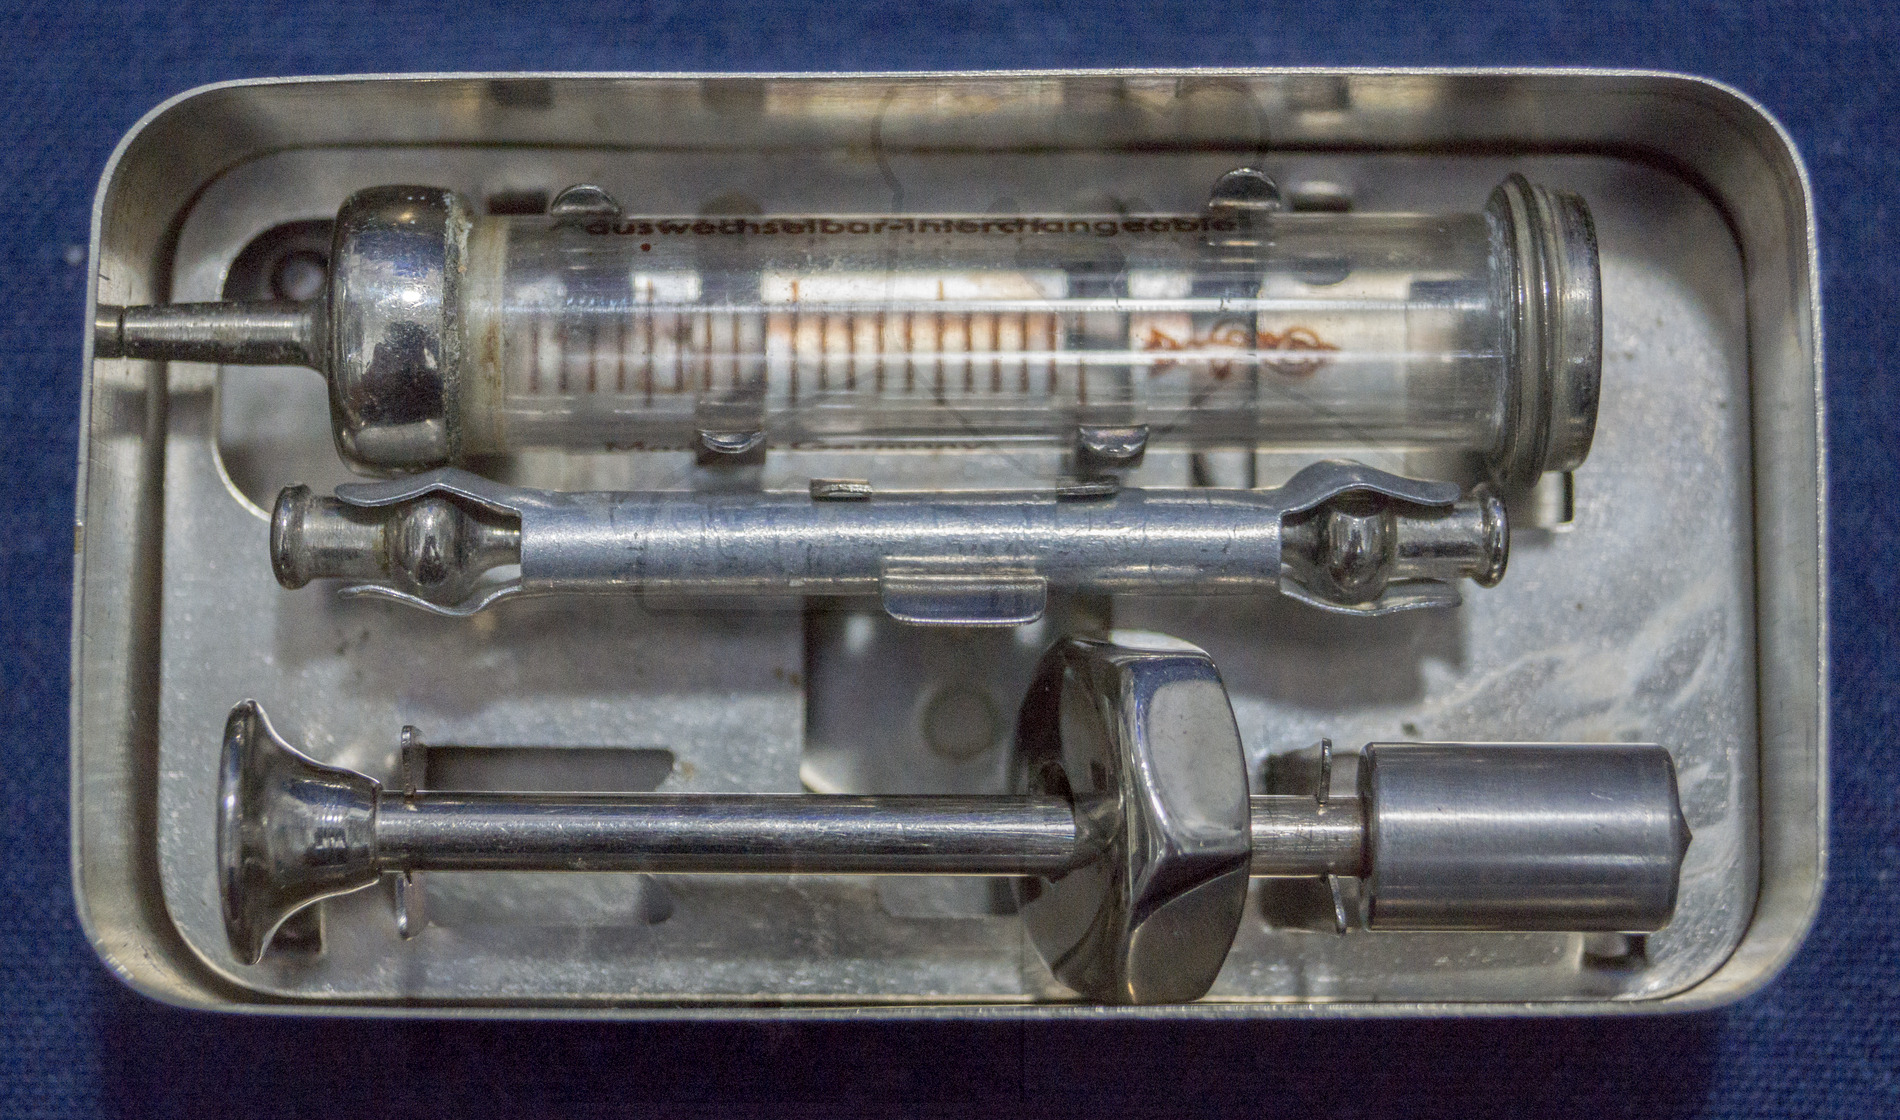 Sterilisierbare Transportbox für 2ml Glasspritzen mit Deckel, Mitte der 1960'er Jahre, Spritze, Kolben und zwei Kanülen in der Box